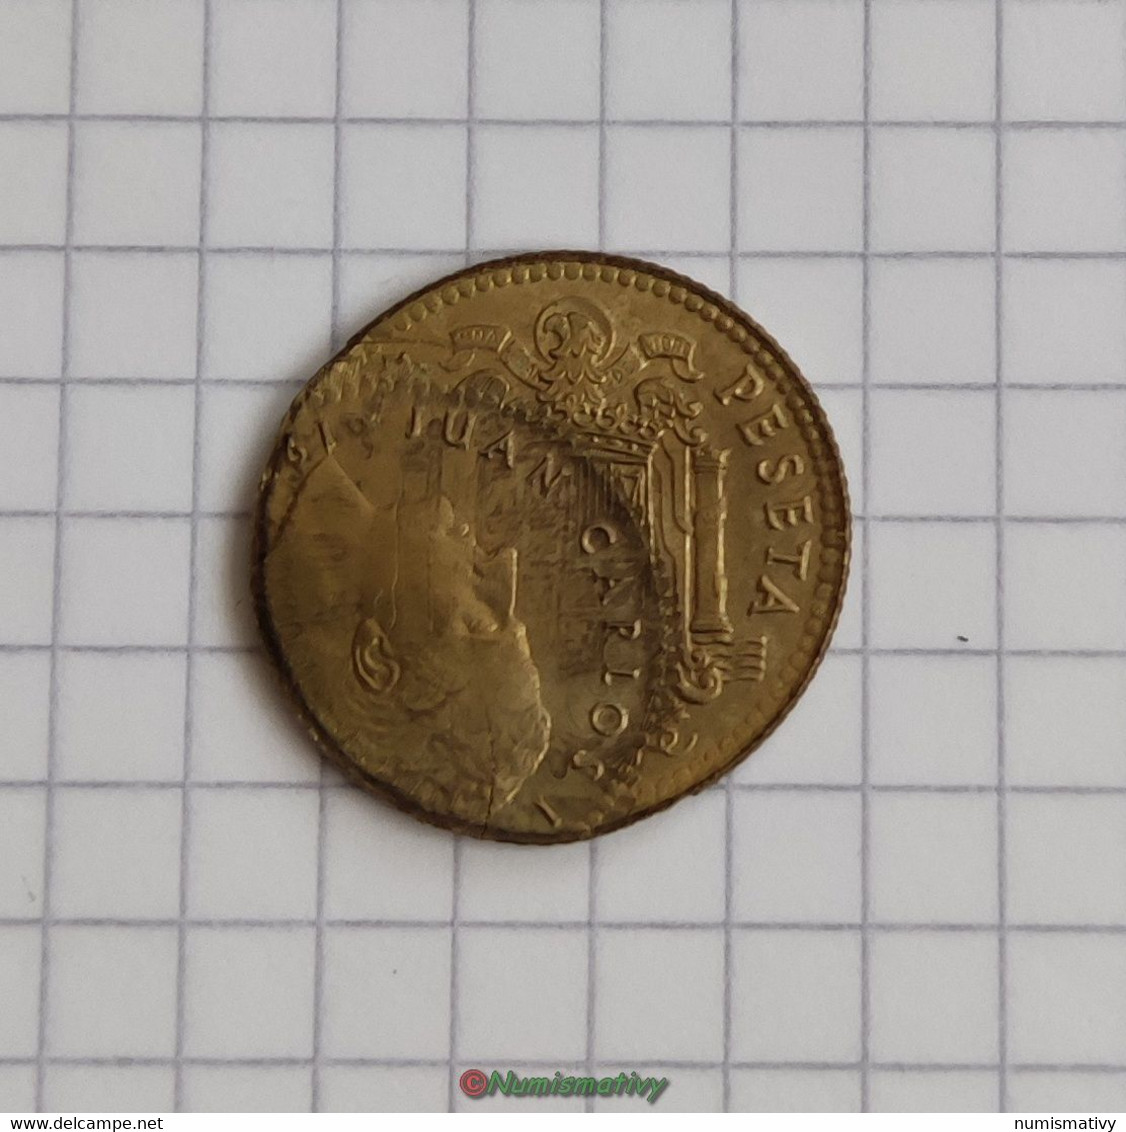 fauté 1 peseta Espagne 1975 1980 double frappe retourné error mint struck reverse defecto ACUÑACION DESPLAZADA